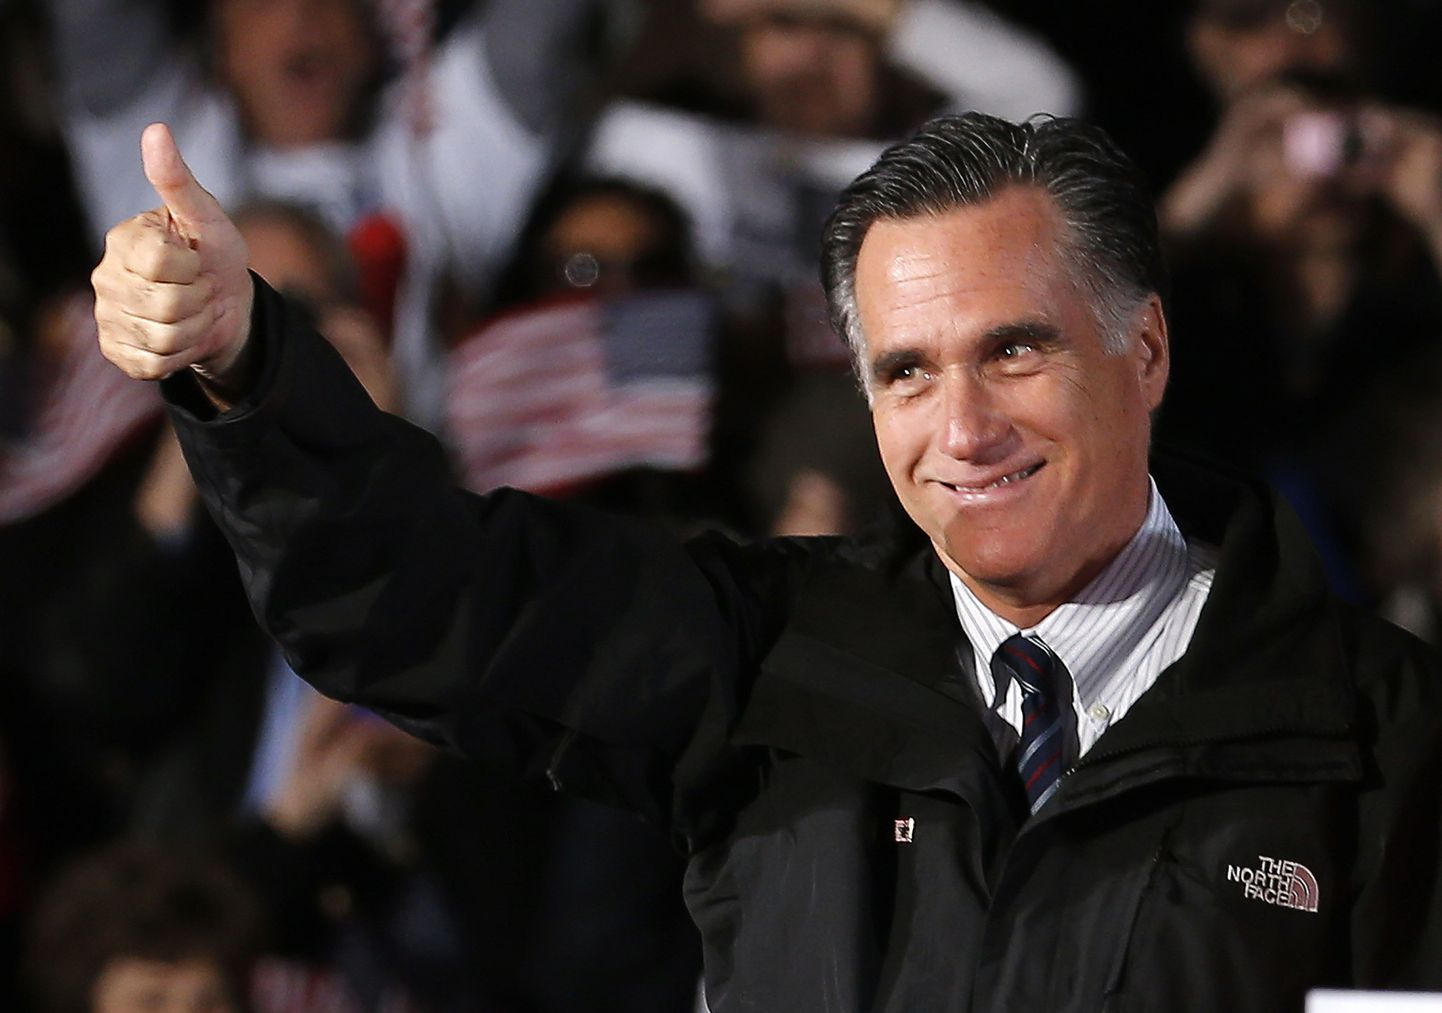 Vabariiklaste presidendikandidaat Mitt Romney eile Ohio osariigis toimunud kampaaniaüritusel.